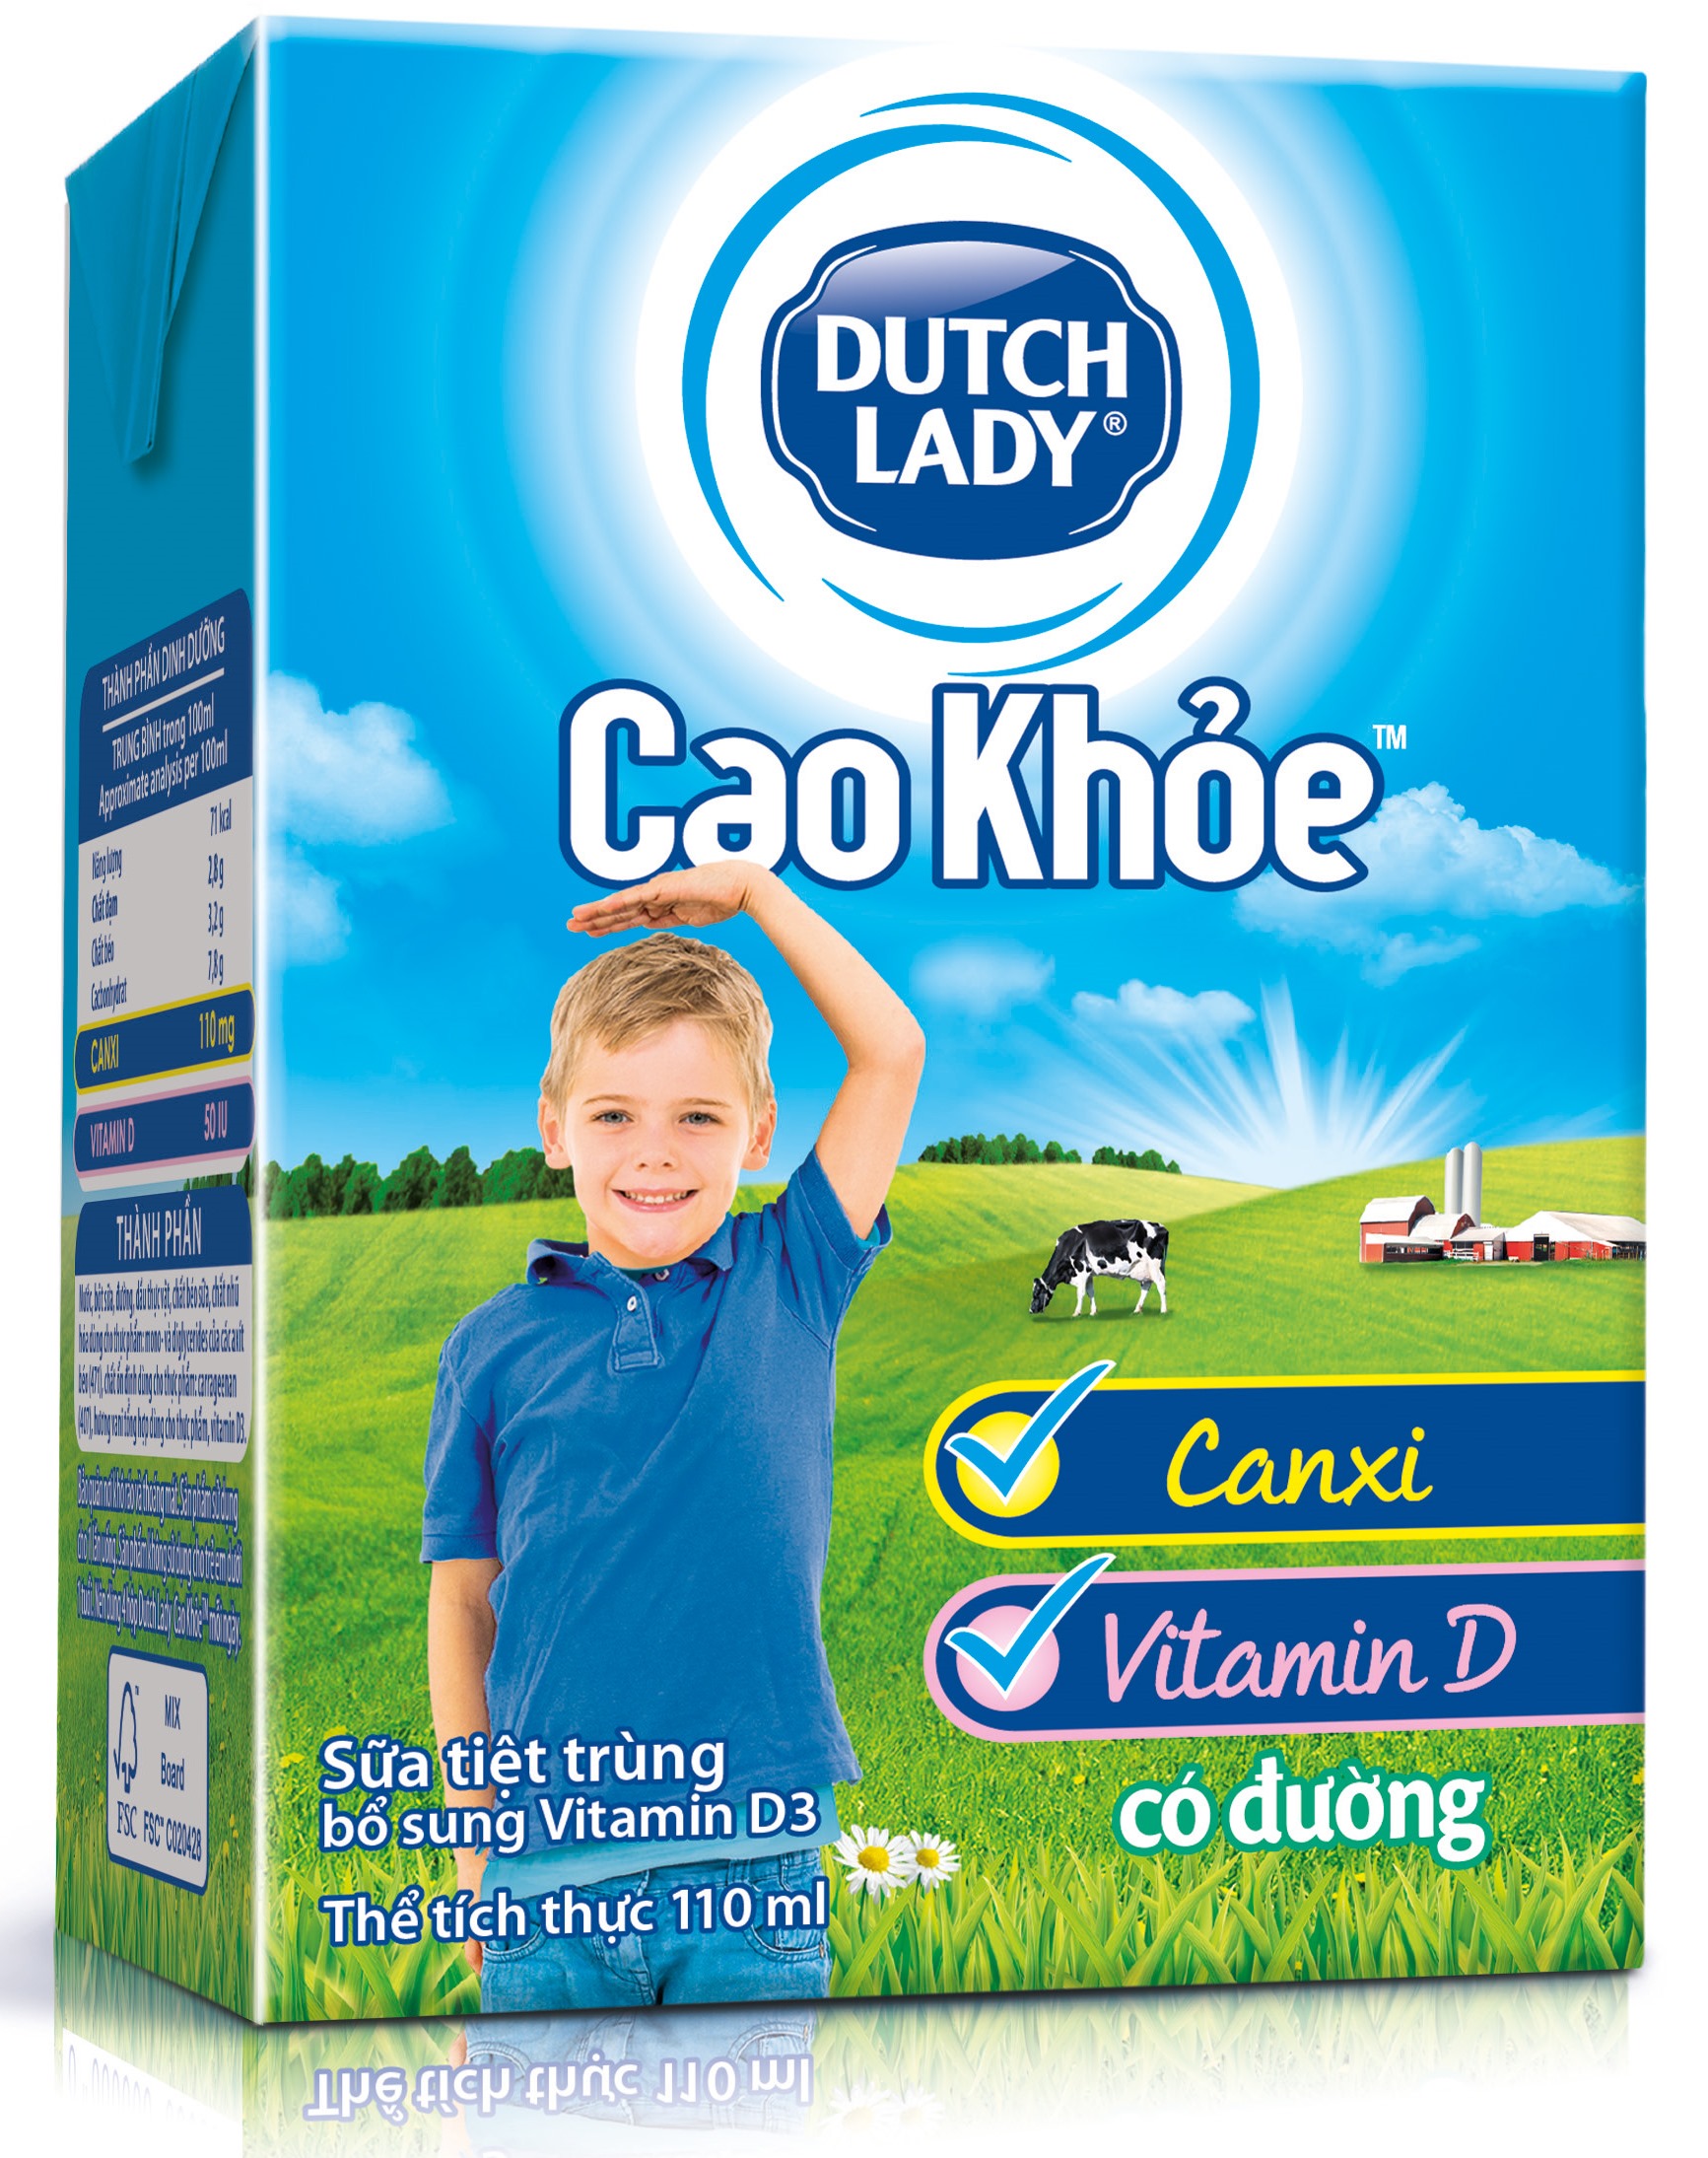 Dutch Lady Cao Khoe (hop nho).jpg